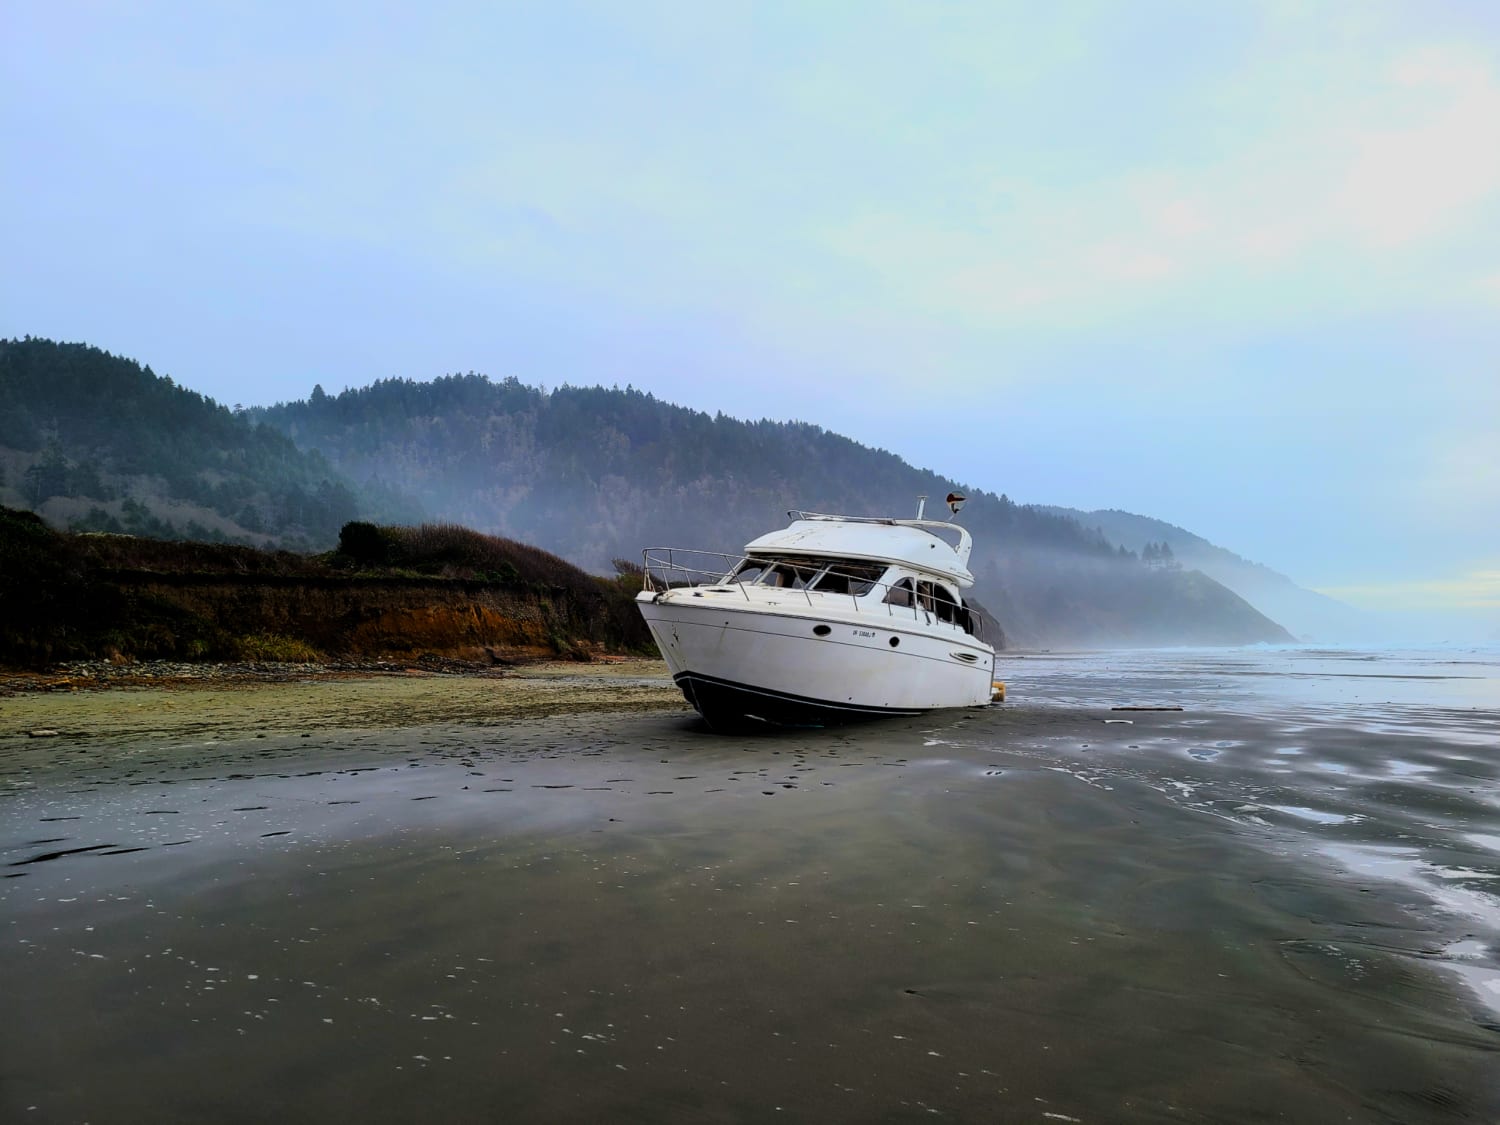 Shipwrecked on the Oregon Coast